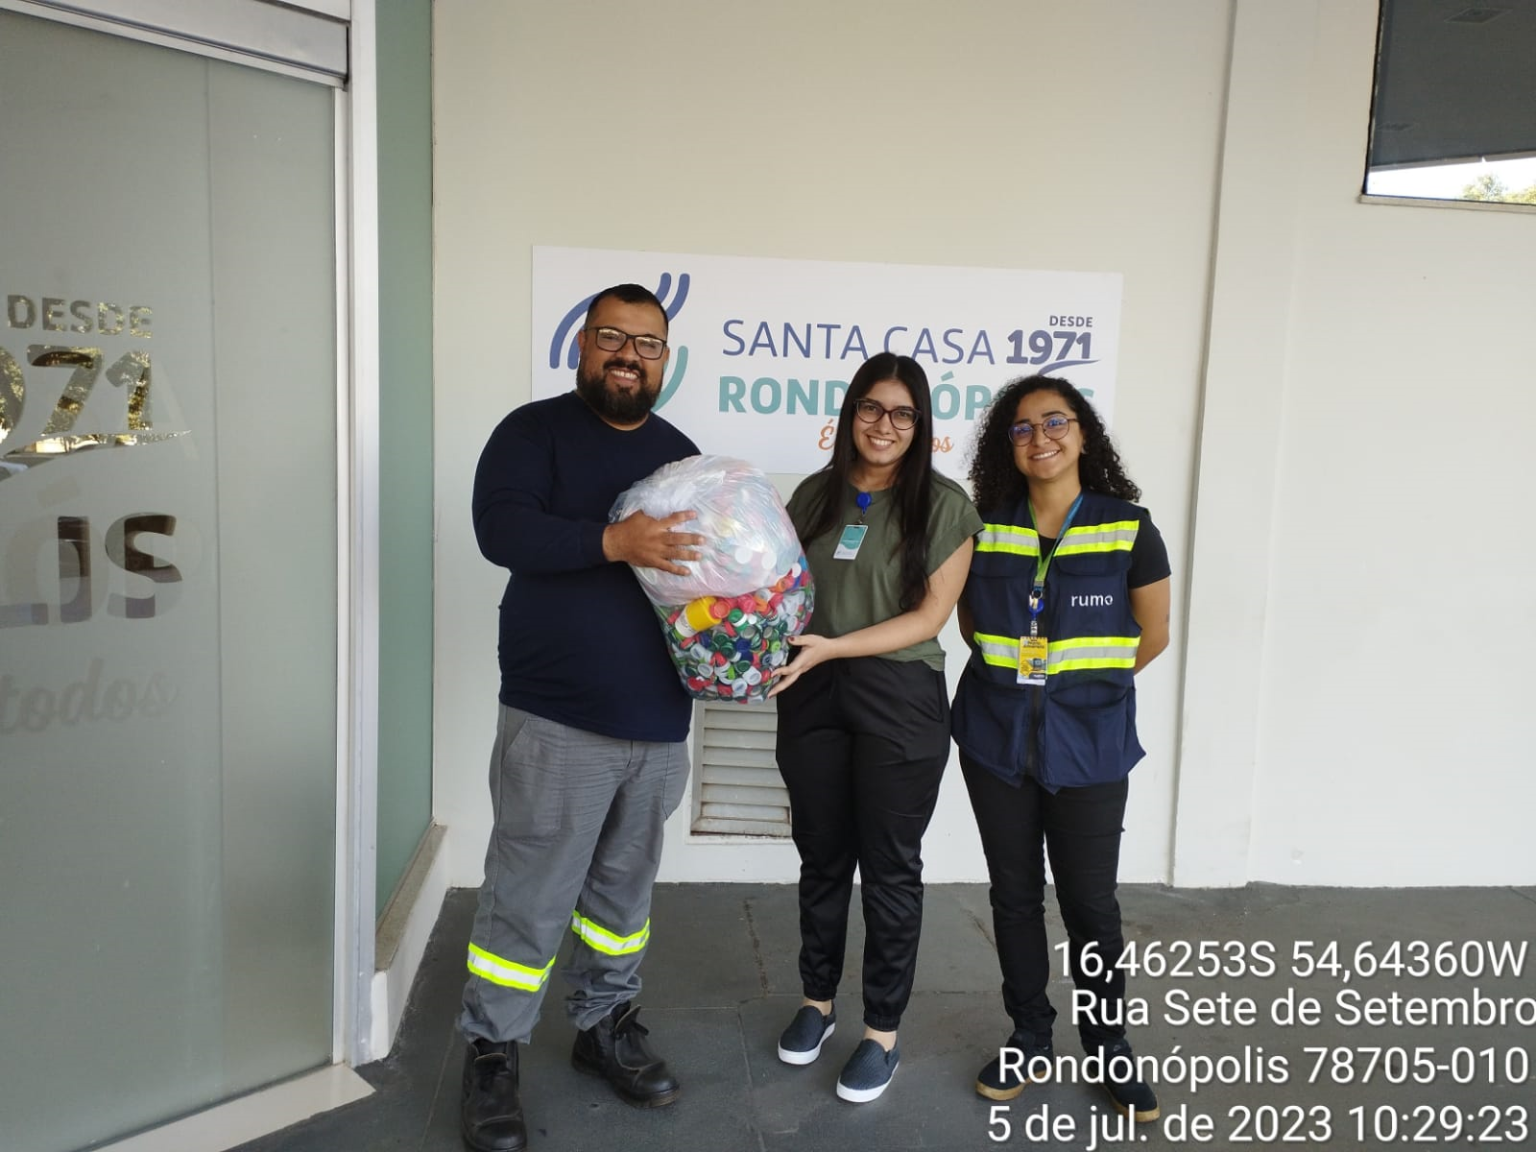 Rumo incentiva a doação de tampinhas para ajudar o Hospital do Câncer da Santa Casa de Rondonópolis